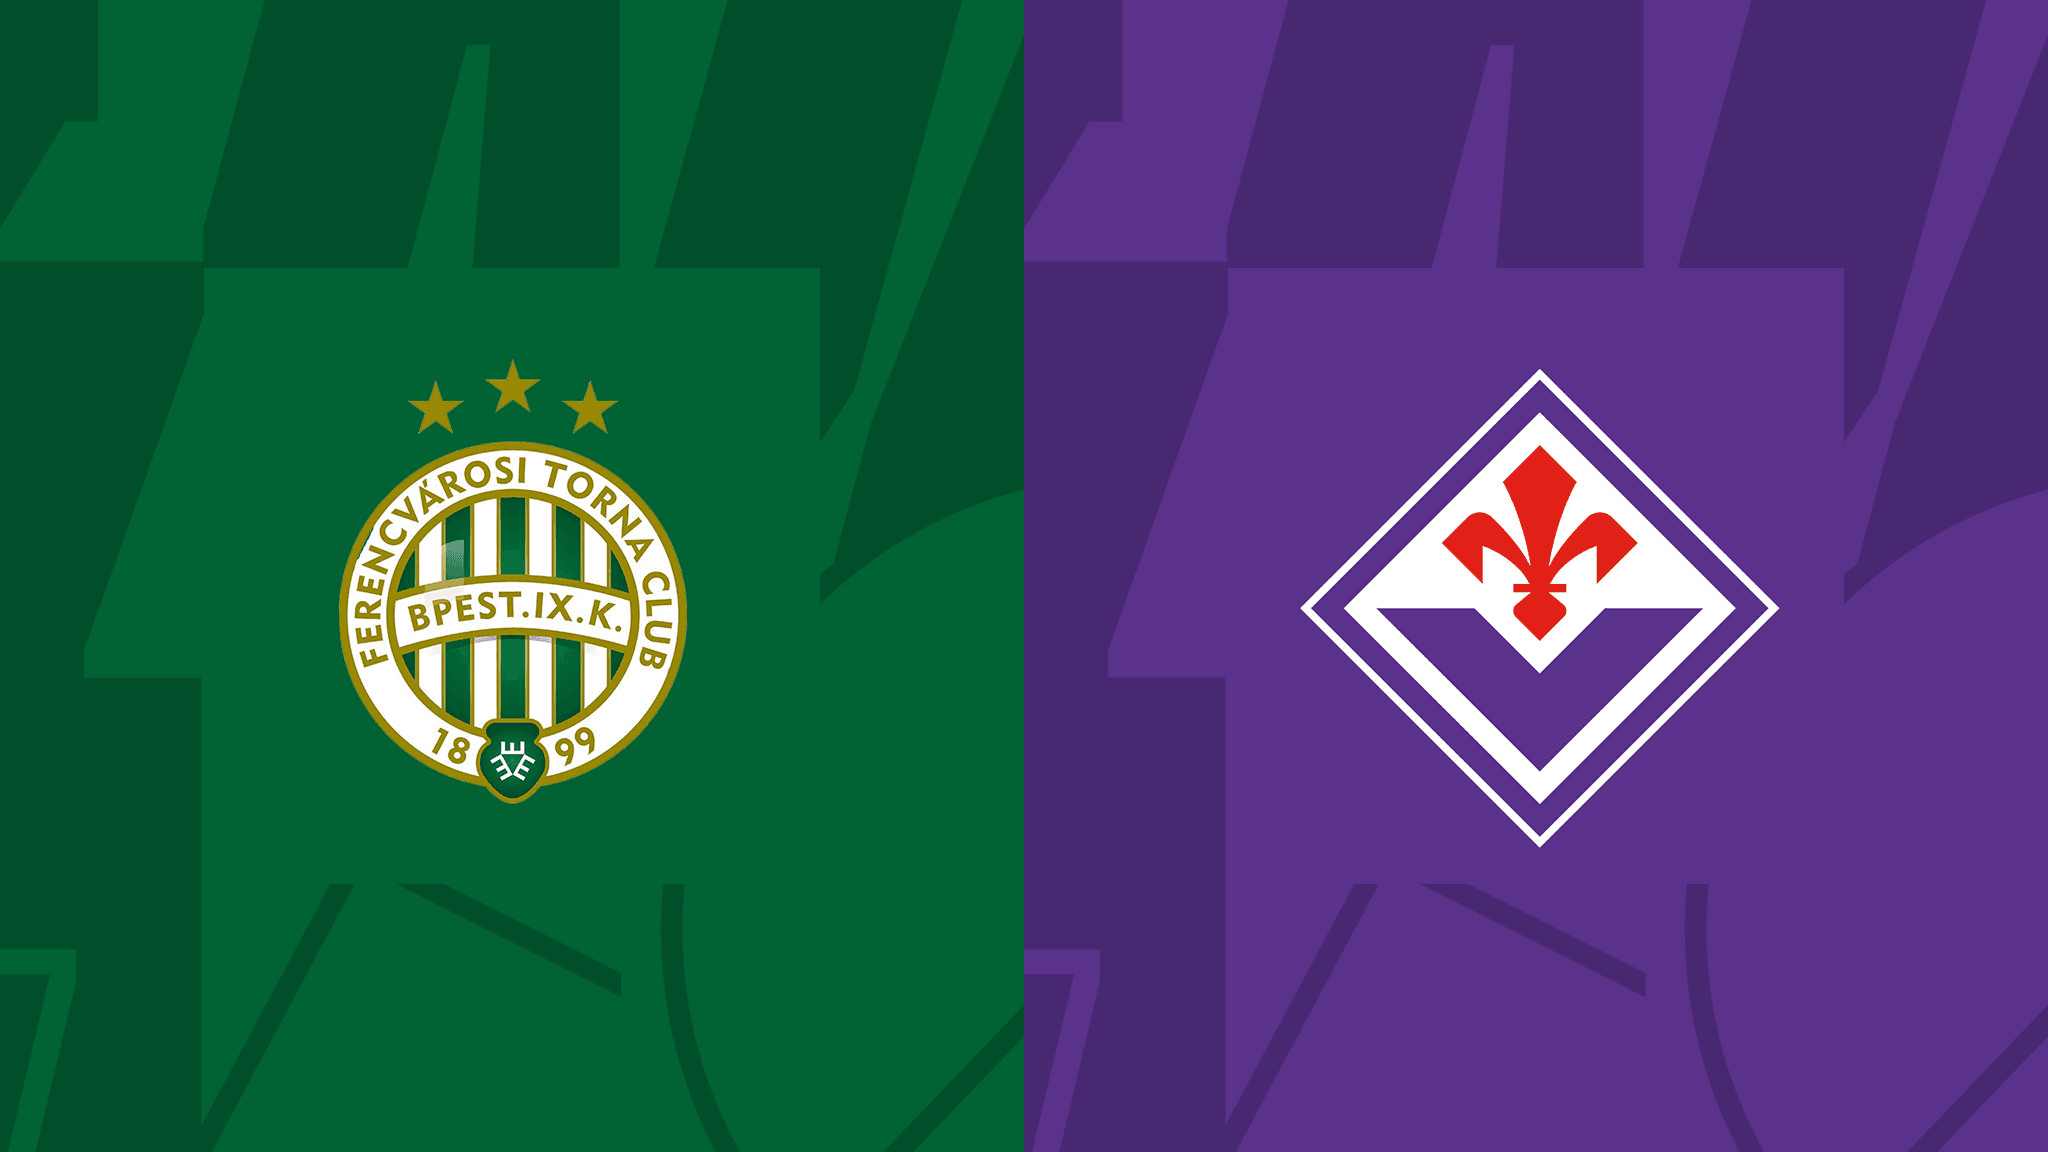 Ferencvaros-Fiorentina, alle 18.45 torna la Conference League: come vederla in streaming gratis